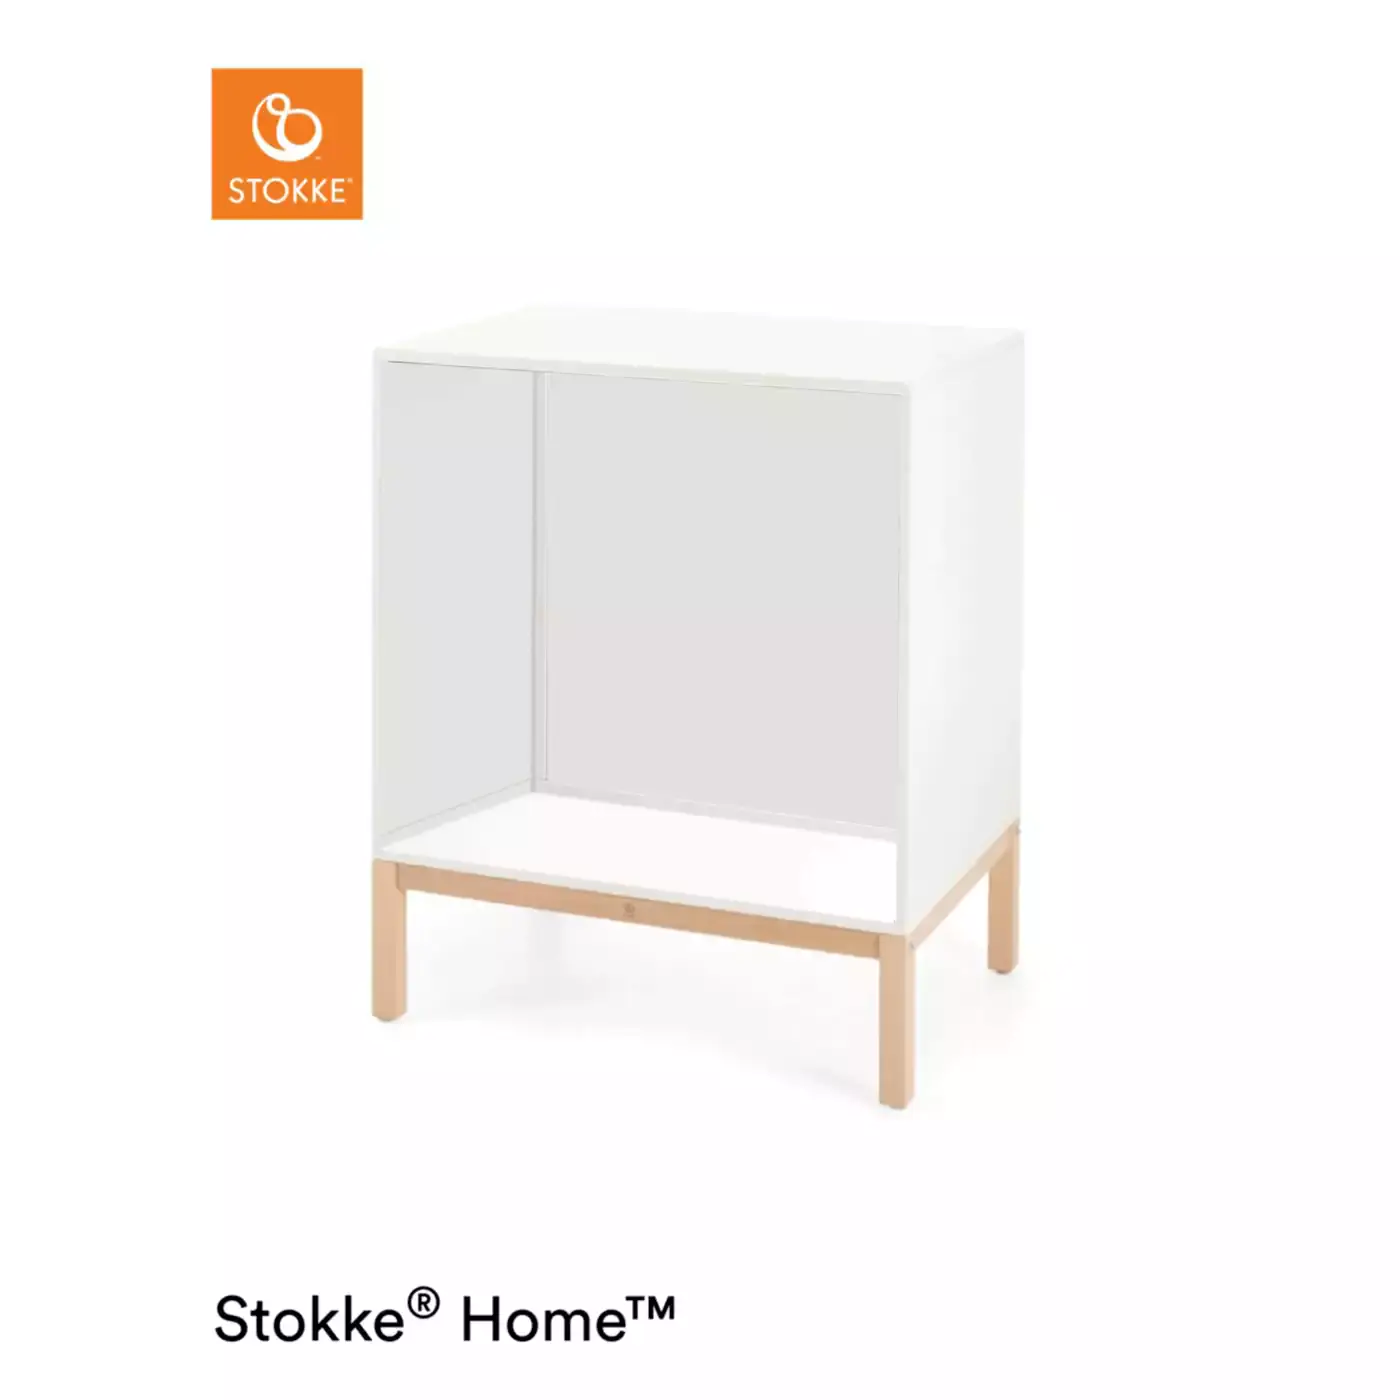 Home™ Dresser Natural Box 1 STOKKE 2000572130103 1